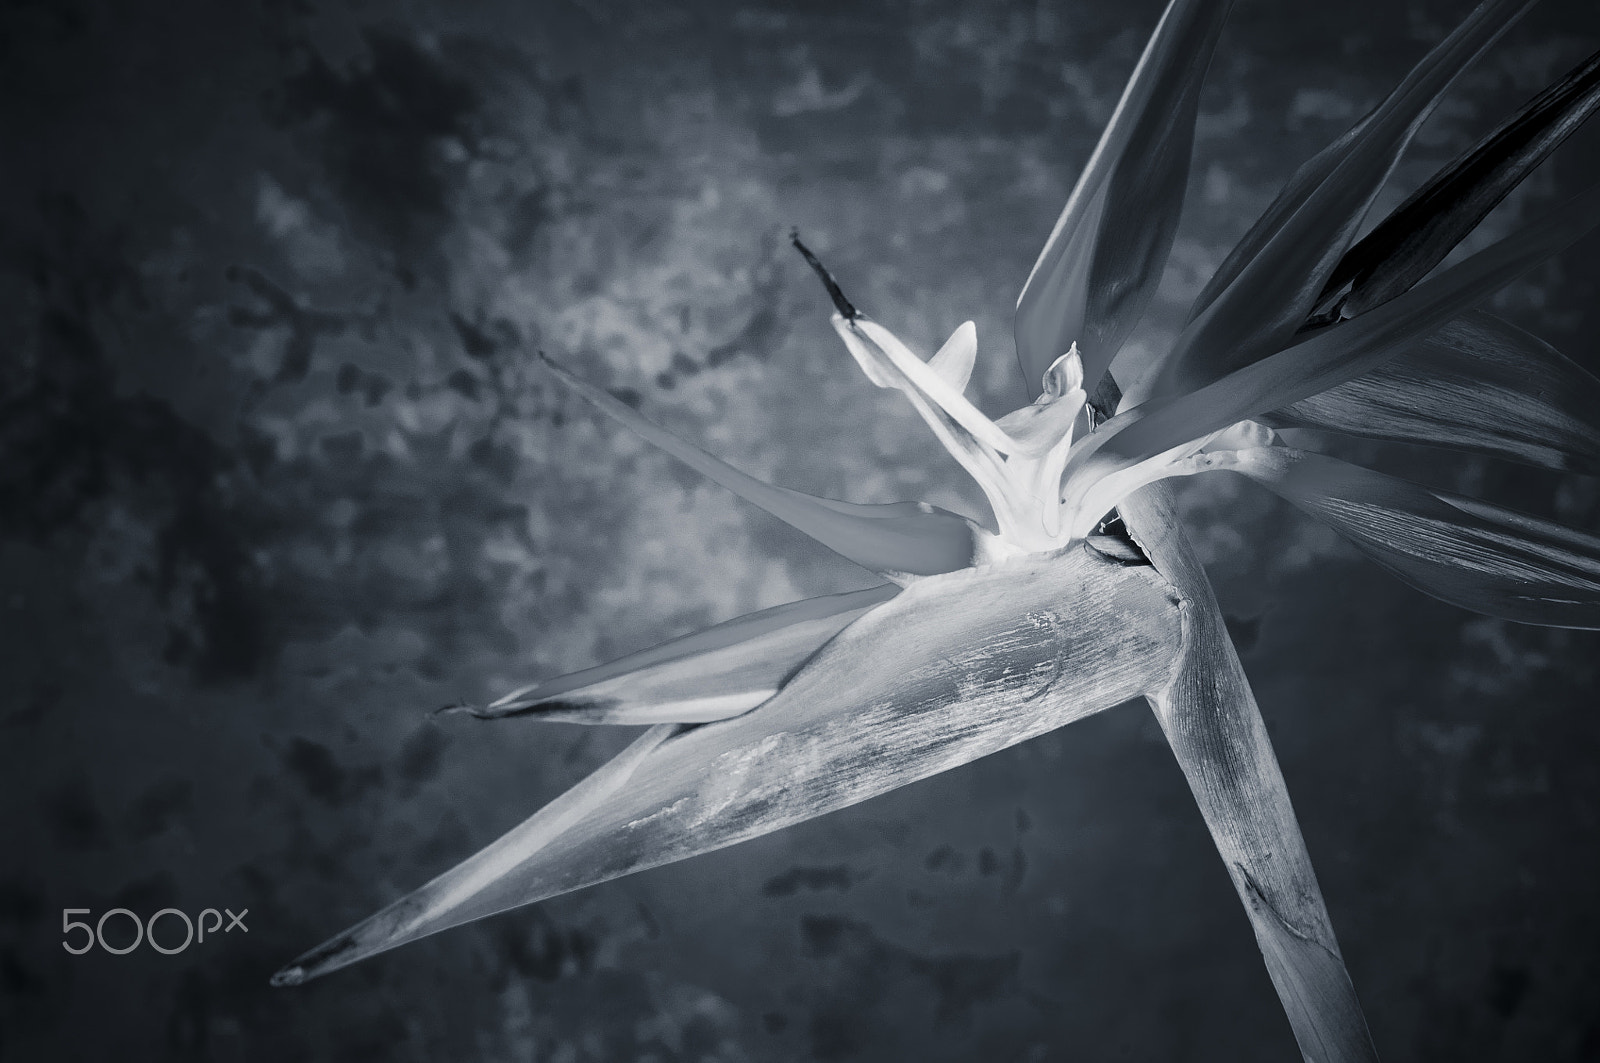 AF Zoom-Nikkor 35-70mm f/2.8D sample photo. Elegant crane flower in bloom / oiseau de paradis photography